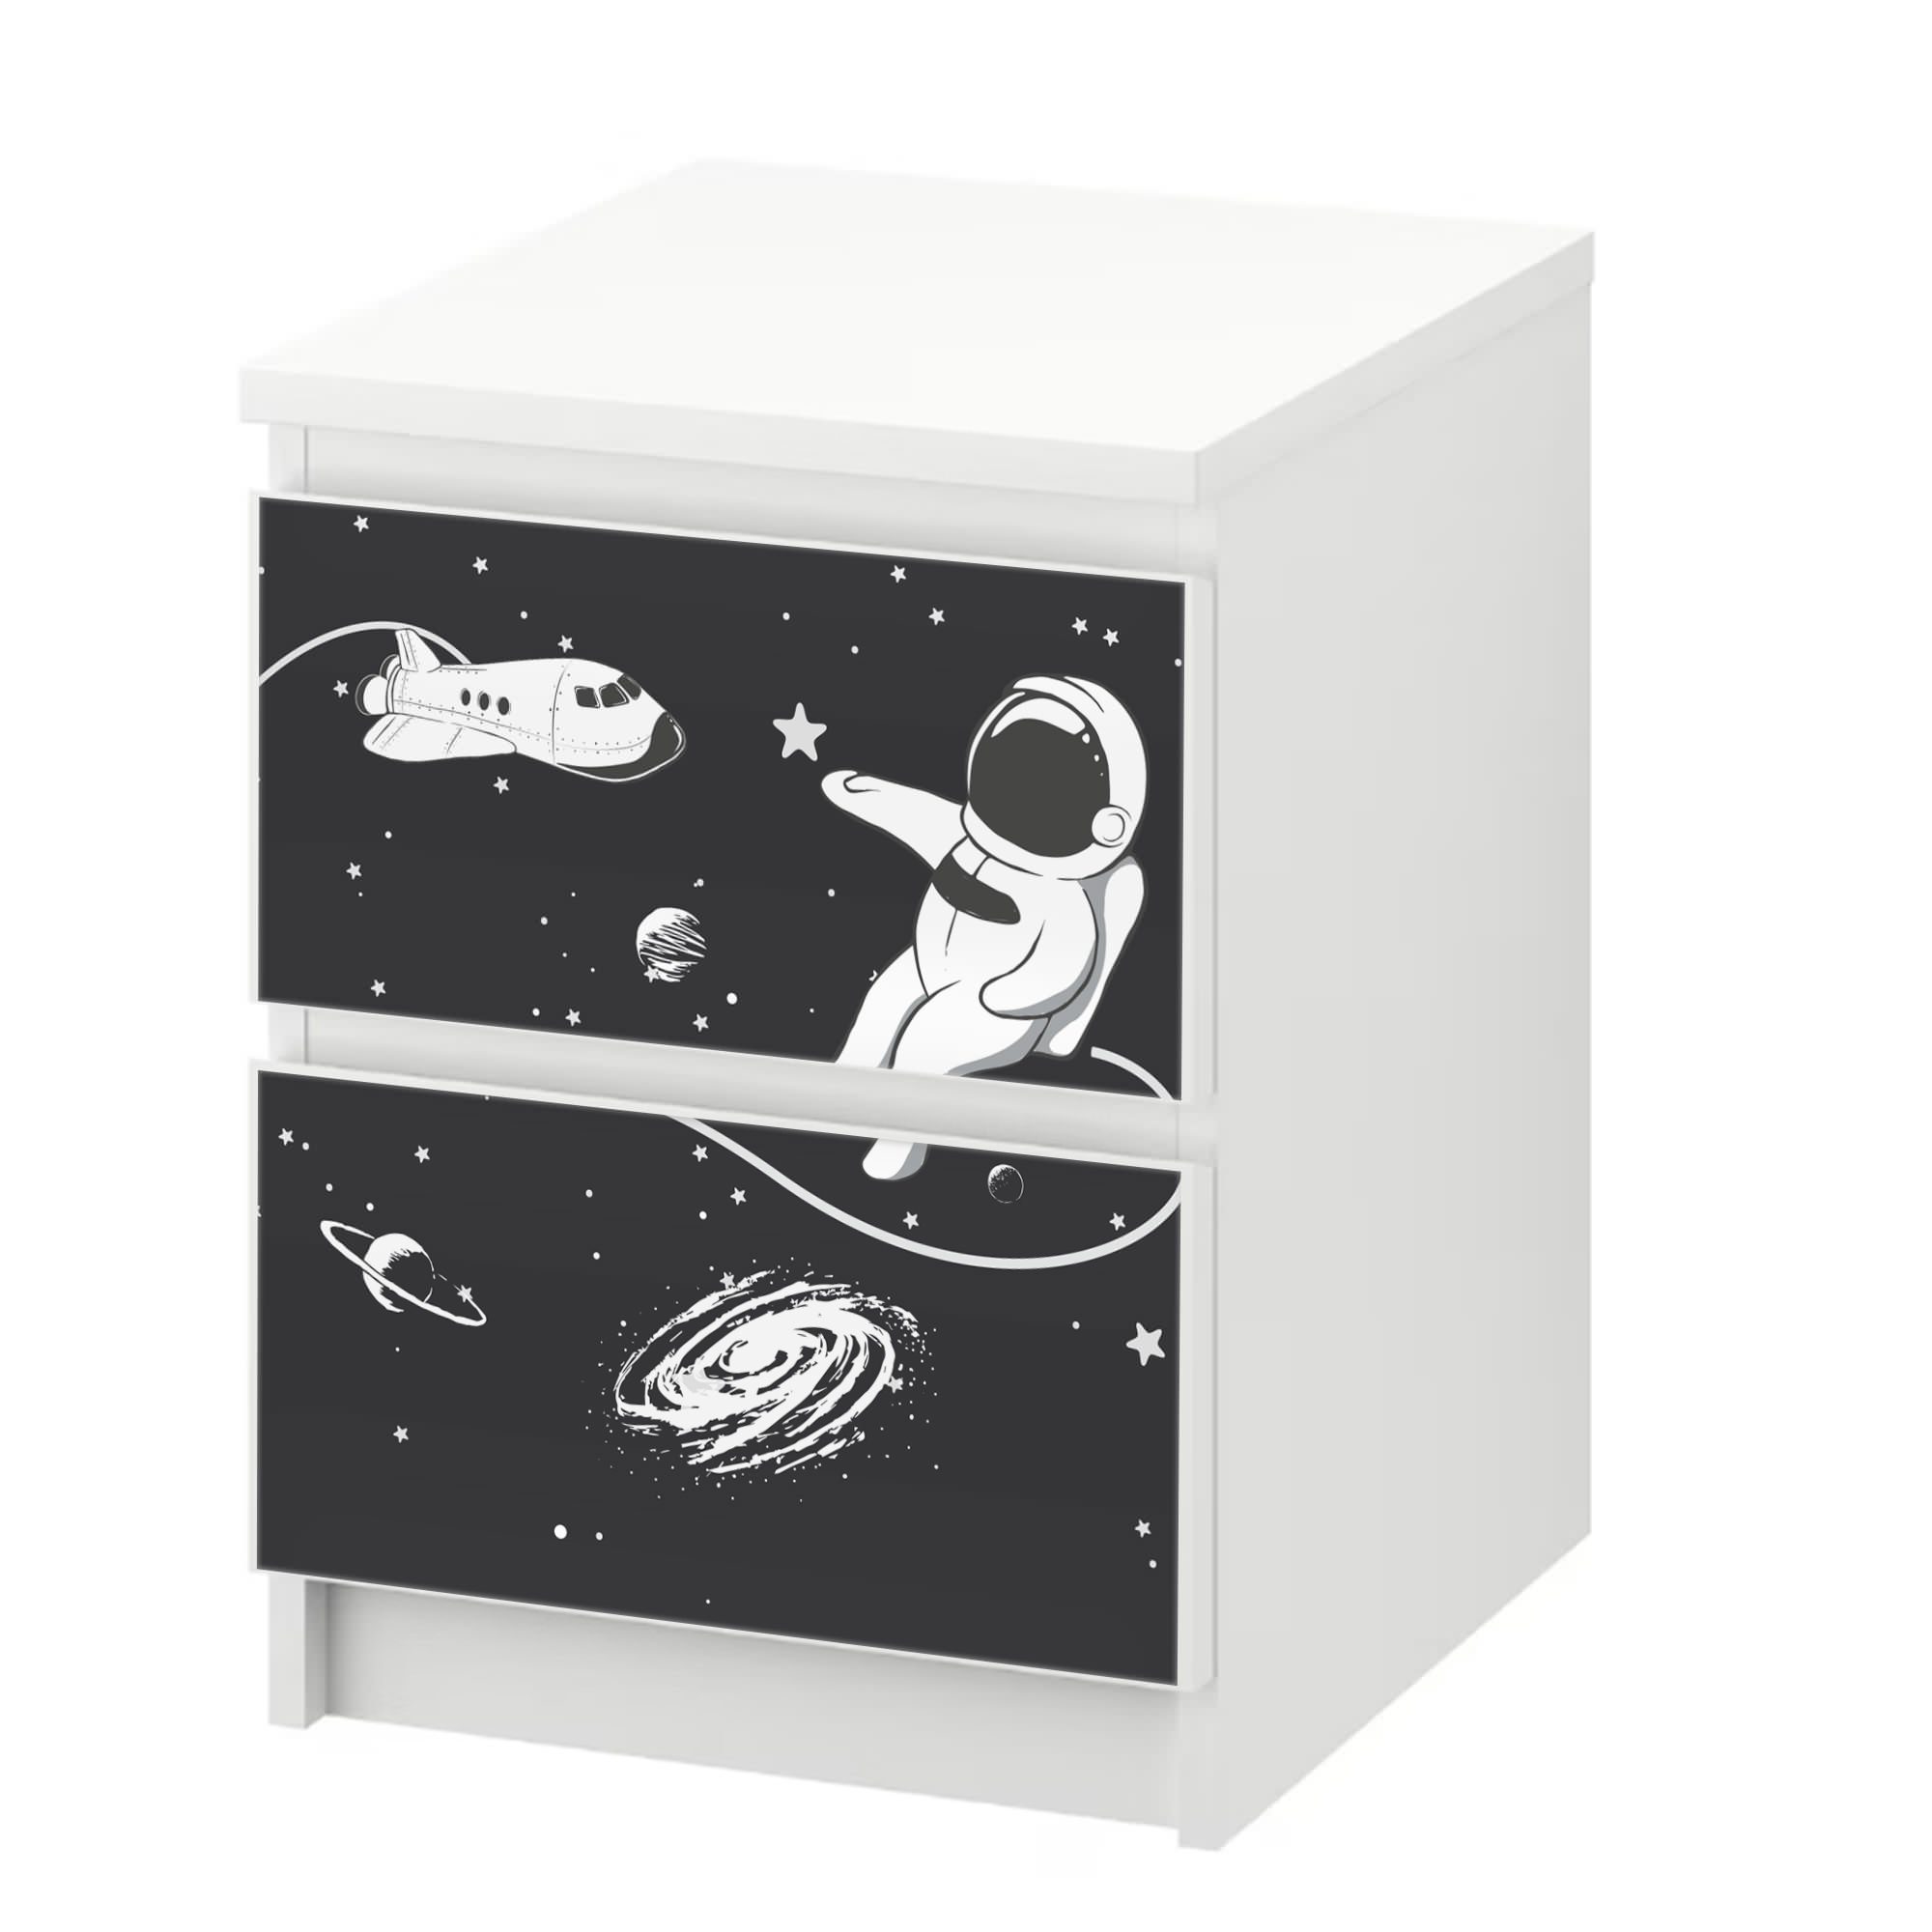 Sunnywall Möbelfolie passend für IKEA Malm Kommode Schrankfolie Aufkleber Astronaut Motiv, blasenfreie selbstklebende Folie (SCHRANK NICHT INKLUSIVE)